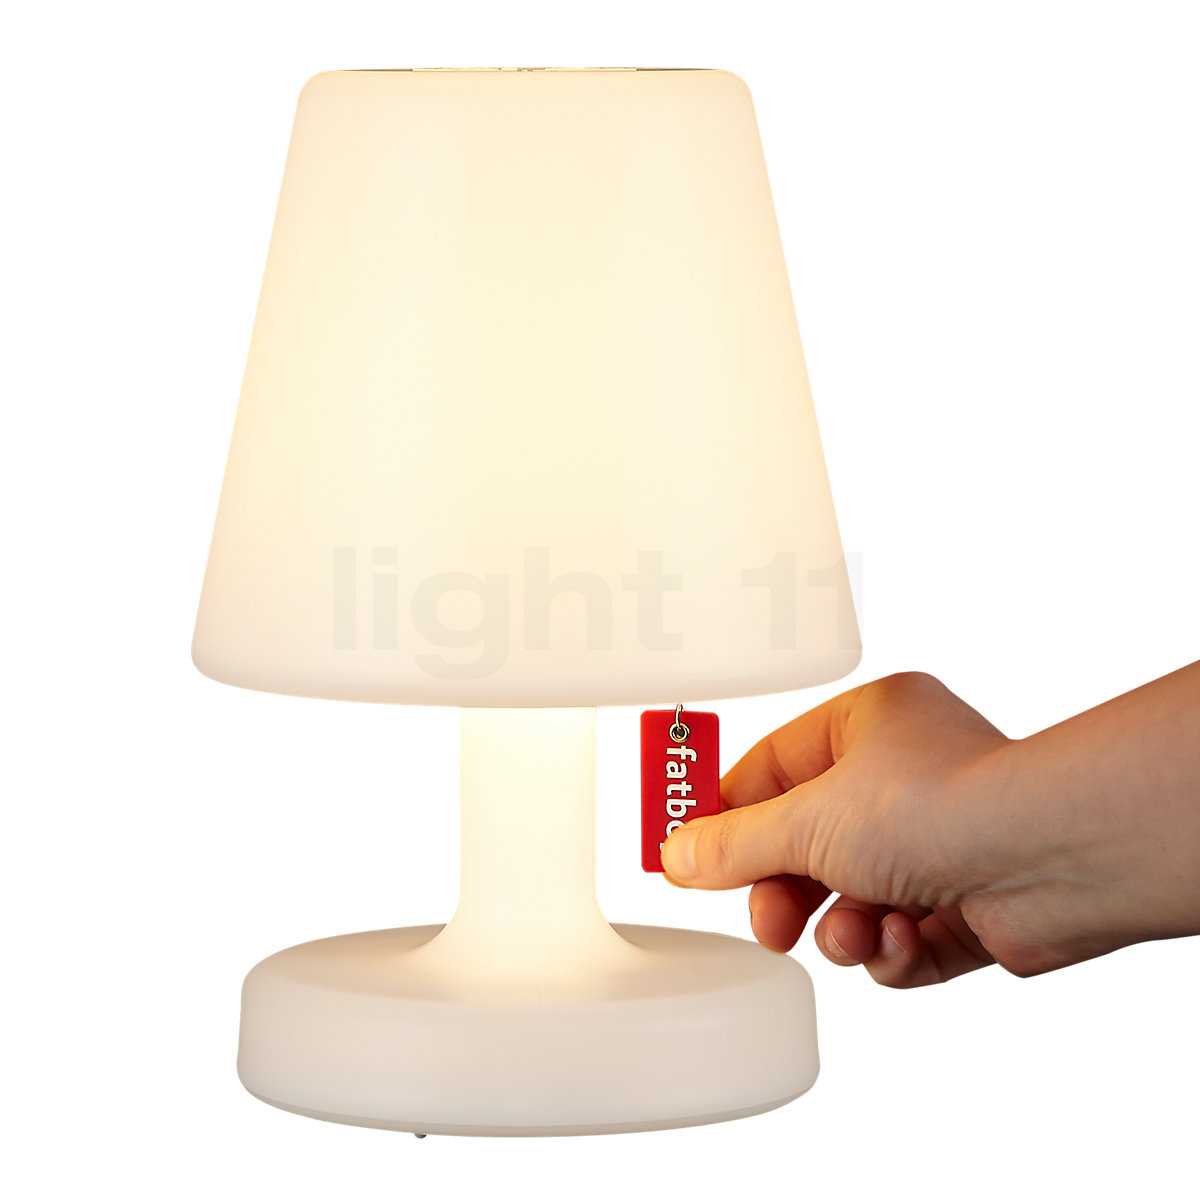 Lampe Led sans fil Edison the Petit - Fatboy - Découvrez Luminaires d' intérieur